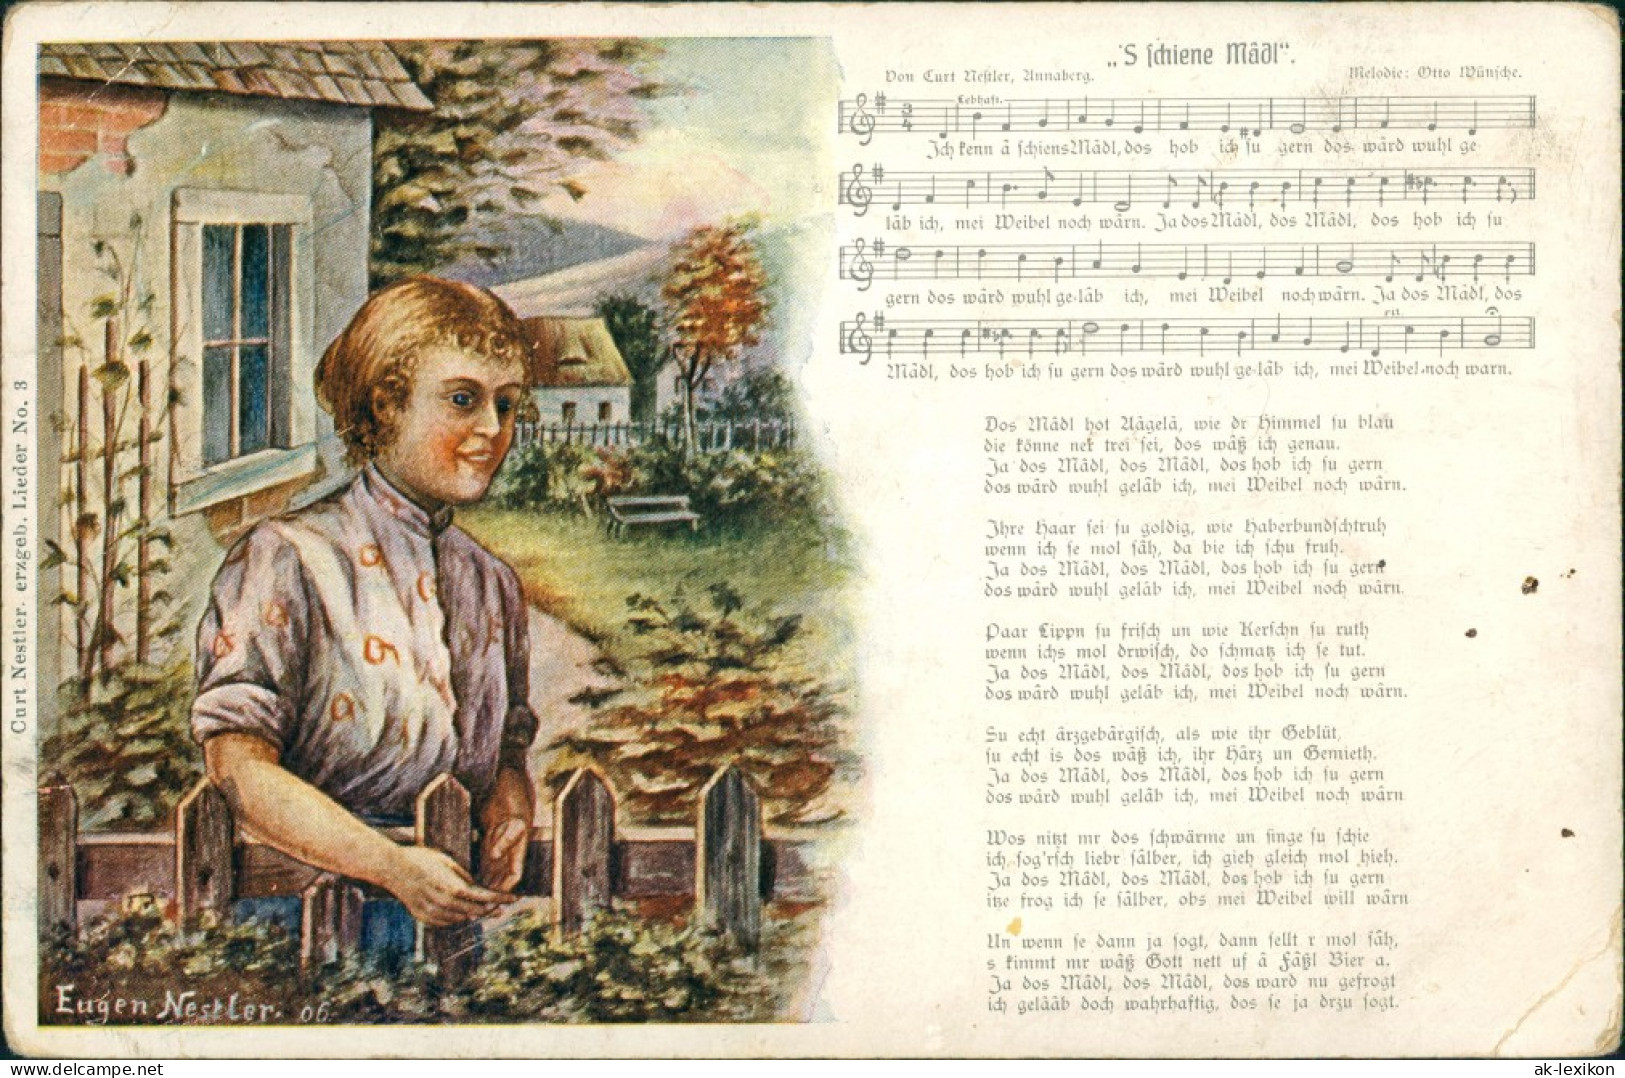 Ansichtskarte  Liedkarten - Scheine Mädl 1935 - Music